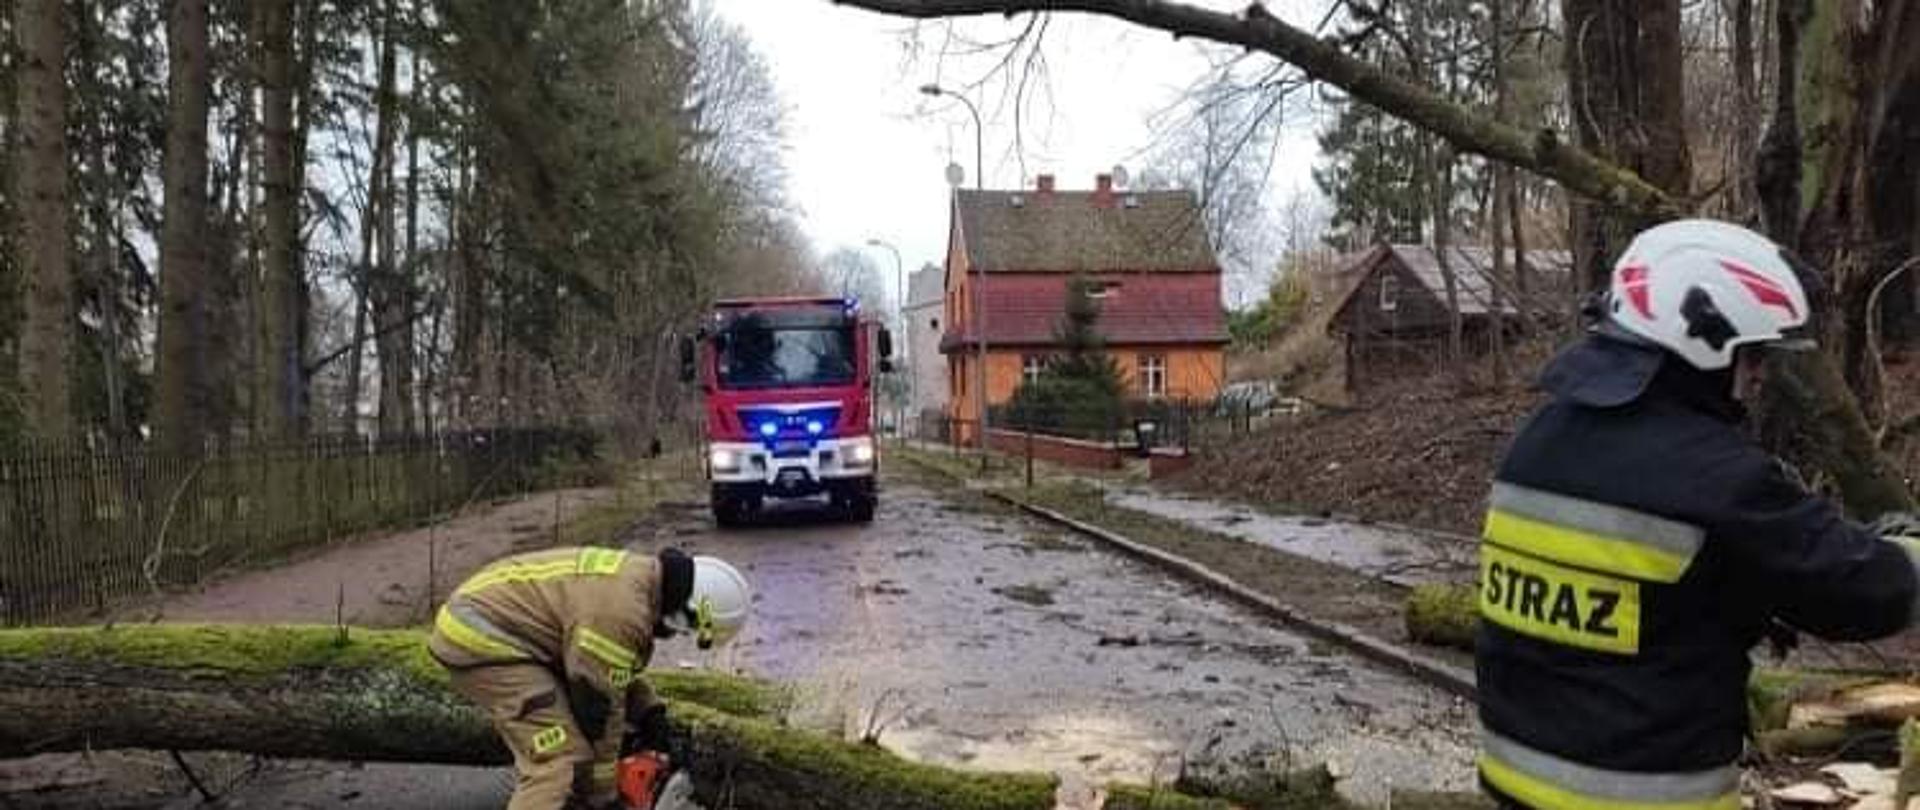 Zdjęcie przedstawia drzewo leżące na drodze, które tnie dwóch strażaków. Za drzewem stoi wóz strażacki w tle są budynki mieszkalne oraz drzewa.